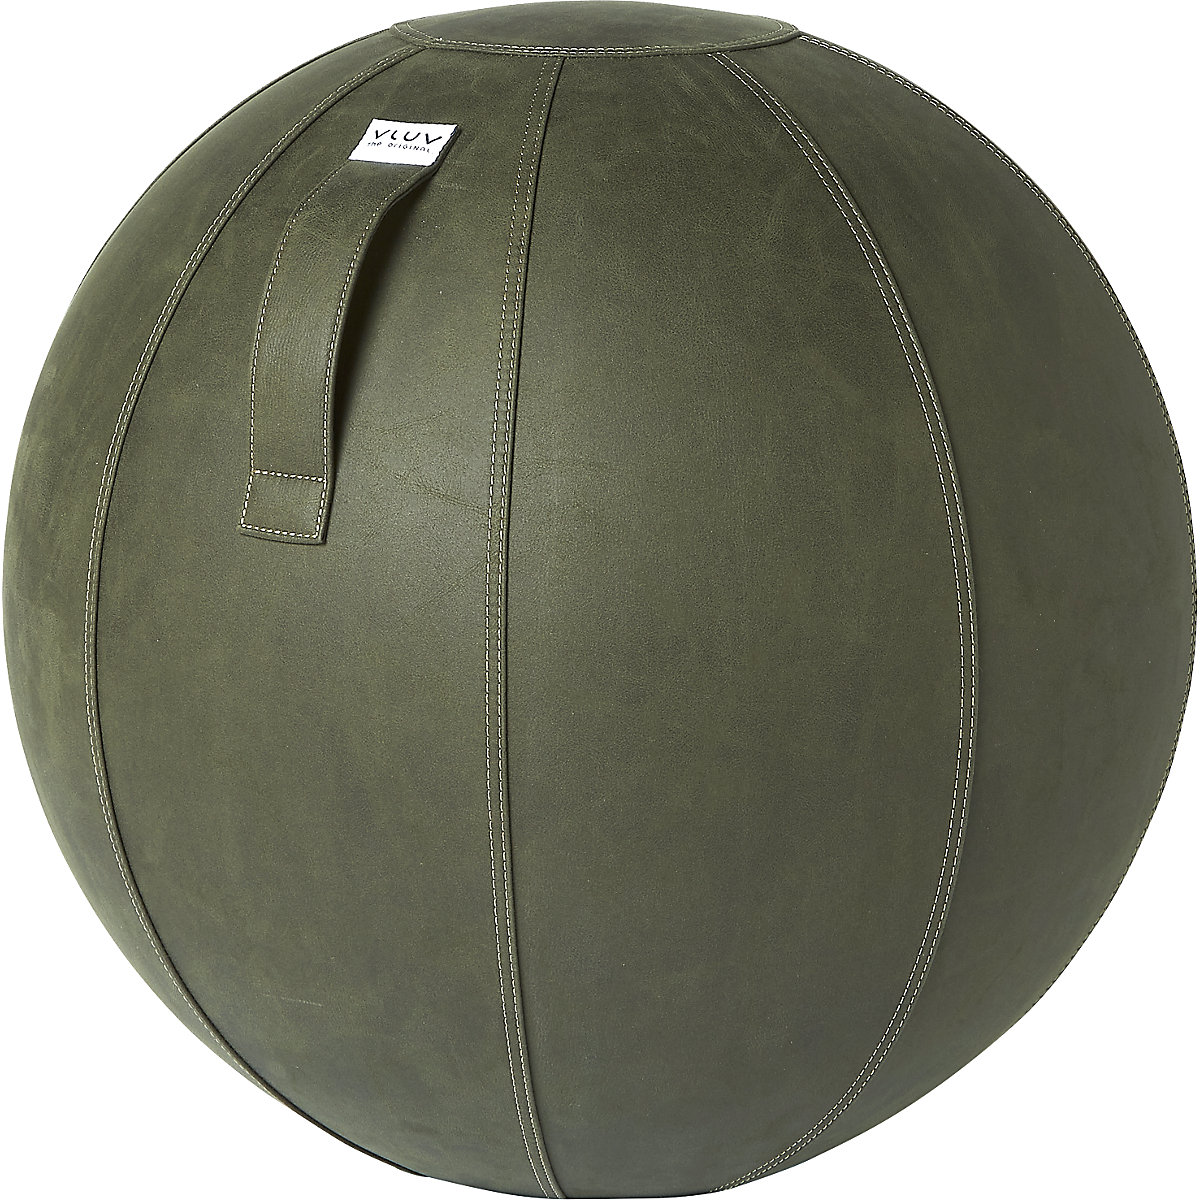 VLUV VEGA Sitzball, veganes Kunstleder, 600 – 650 mm, moosgrün